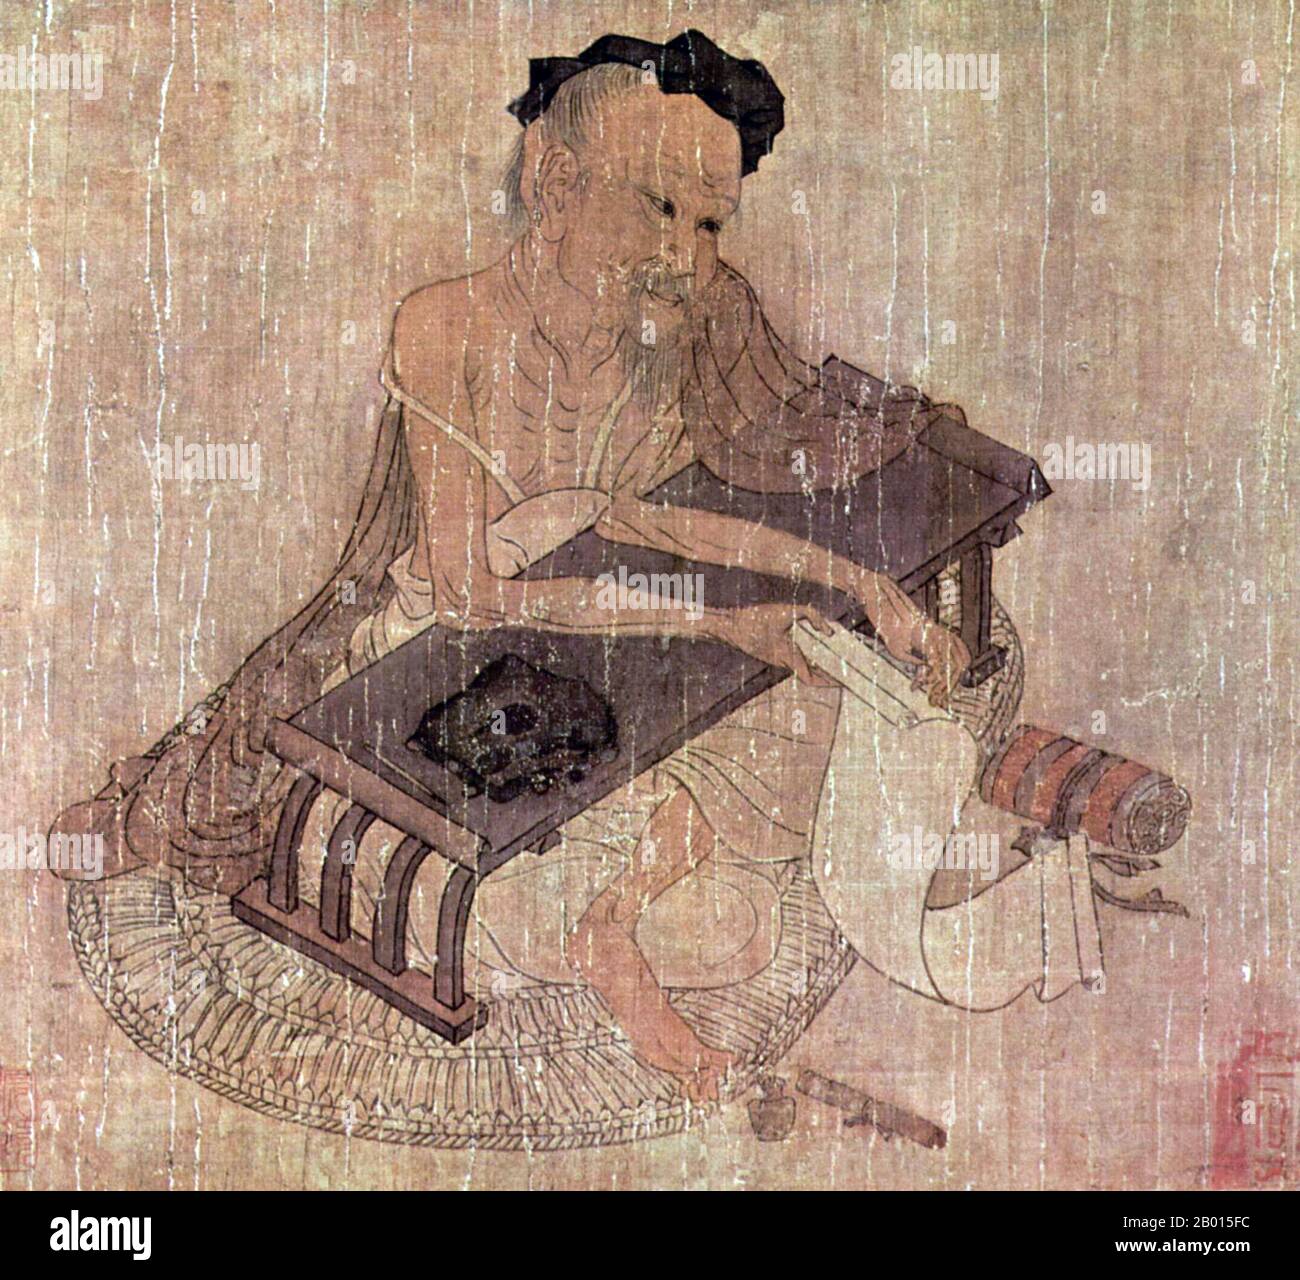 Cina: Ritratto dello studioso fu Sheng. Pittura a mano del pittore Wang Wei (699-759), c. 720-760 CE. Wang Wei (Wang Youcheng, 699-759) è stato un poeta, musicista, pittore e statista cinese della dinastia Tang. Era uno dei più famosi uomini d'arte e di lettere del suo tempo. I suoi dipinti sopravvivono solo in copie successive di altri artisti, sebbene comunque molto influenti in termini di pittura della Dinastia Tang e successiva pittura cinese. Molte delle sue poesie sono conservate, e ventinove sono state incluse nell'altamente influente antologia del XVIII secolo 'trecento poesie Tang'. Foto Stock